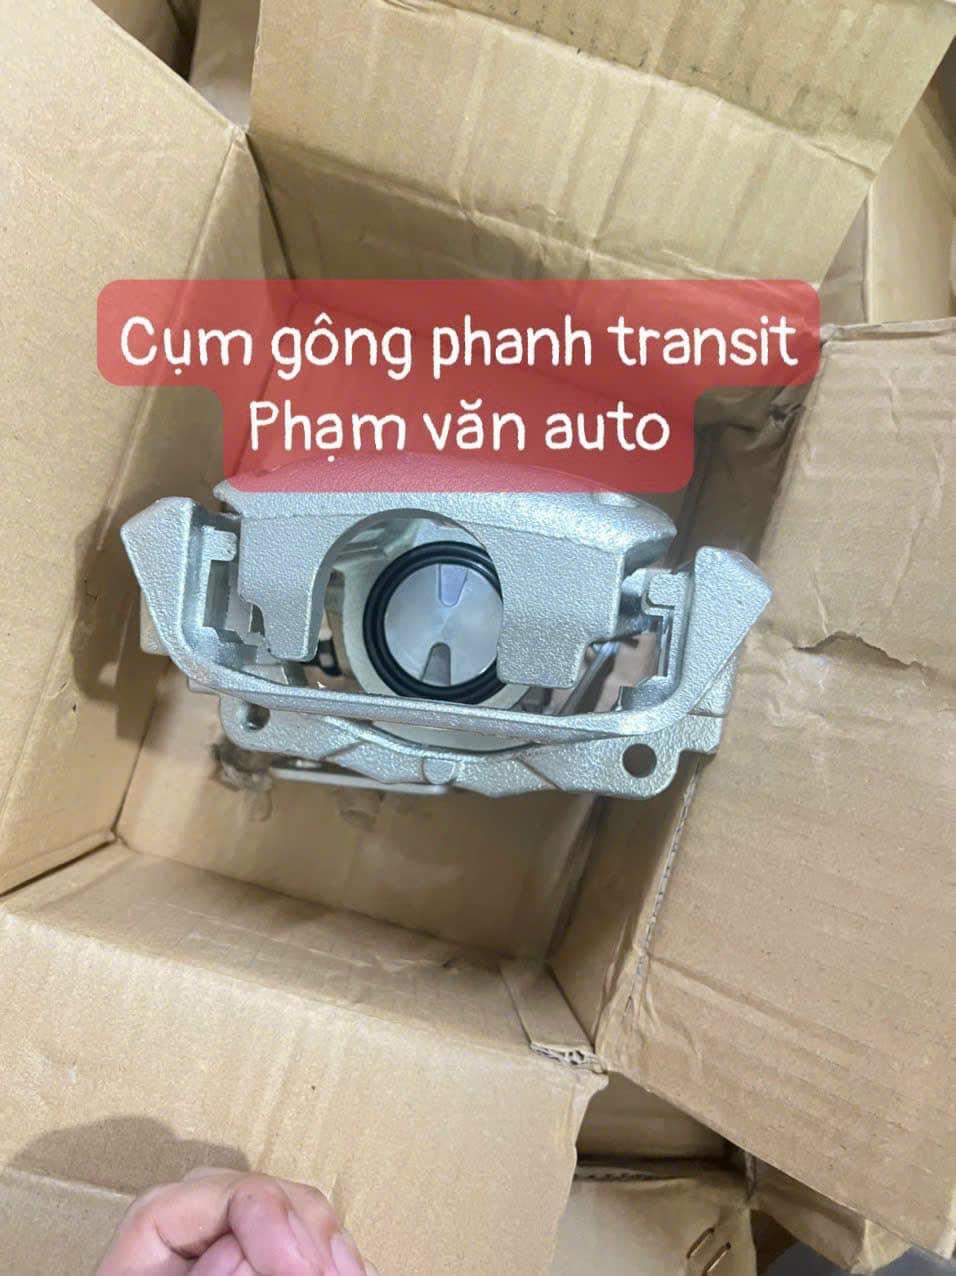 Cụm Gông Phanh Sau Ford Transit 2008 đến 2021 6C112B118AE 6C112B119AF Chính Hãng Giá Rẻ Phạm Văn Auto